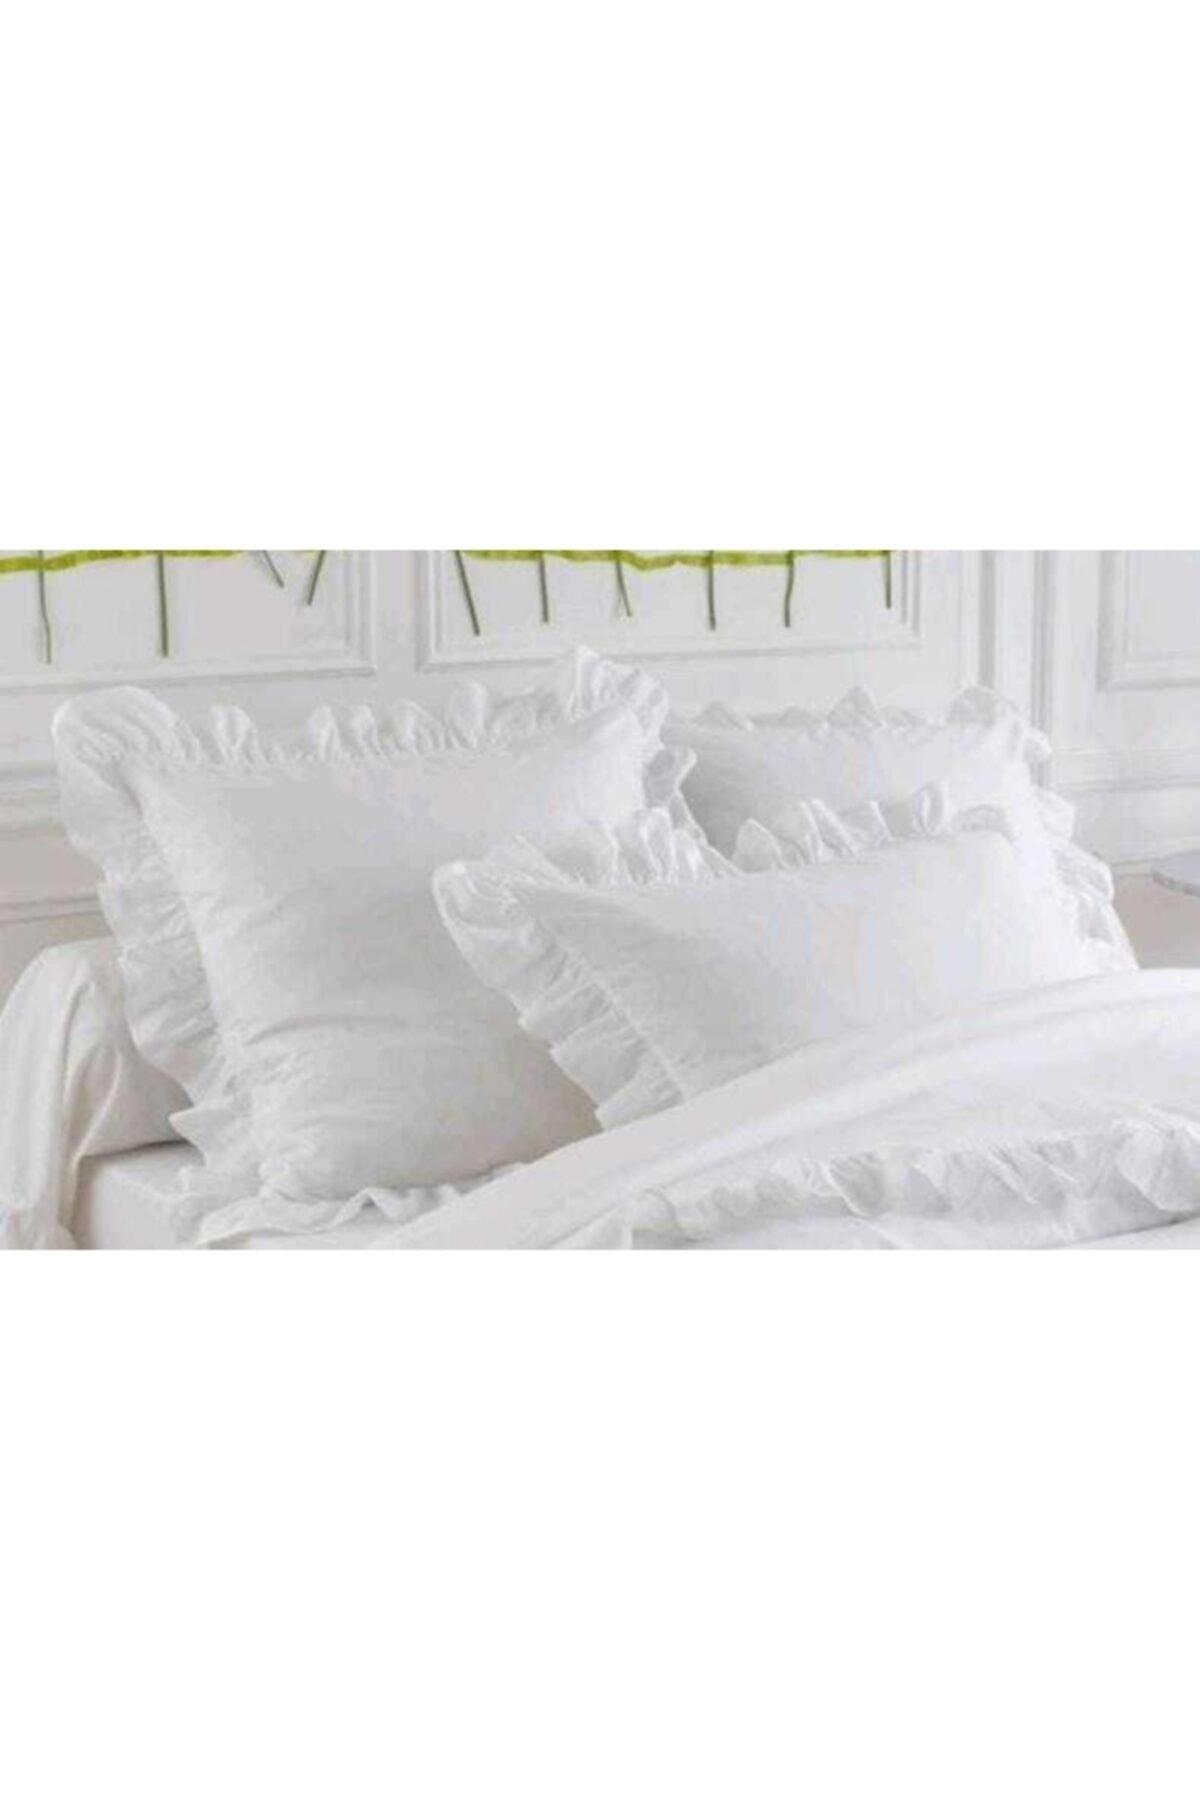 100% Cotton Frilly White White Flat Two Pillowcases 50x70 - Swordslife